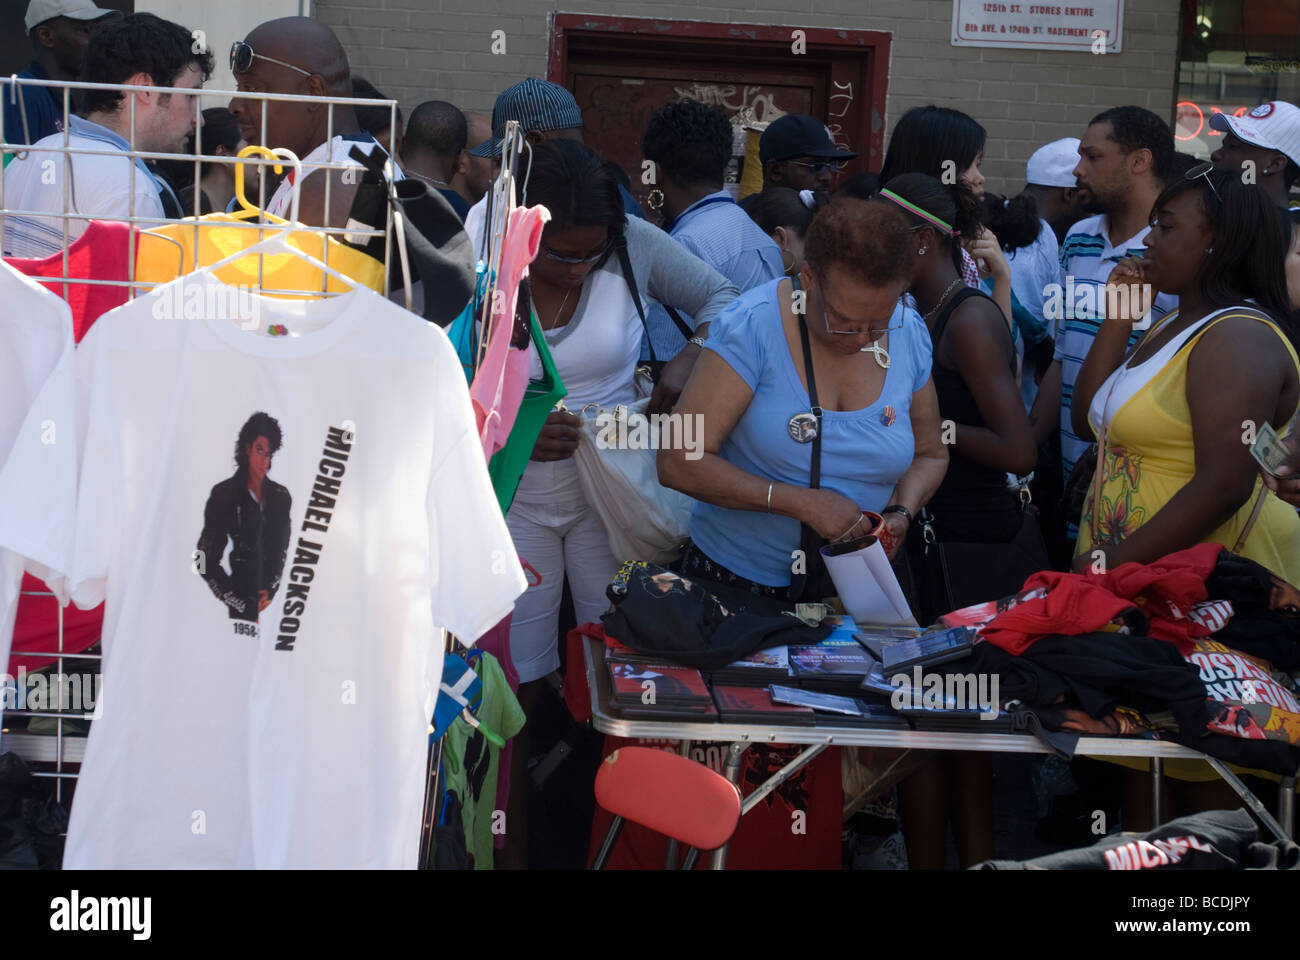 Fournisseurs proposent Michael Jackson t-shirts et accessoires à l'extérieur de l'Apollo Theatre de Harlem à New York Banque D'Images